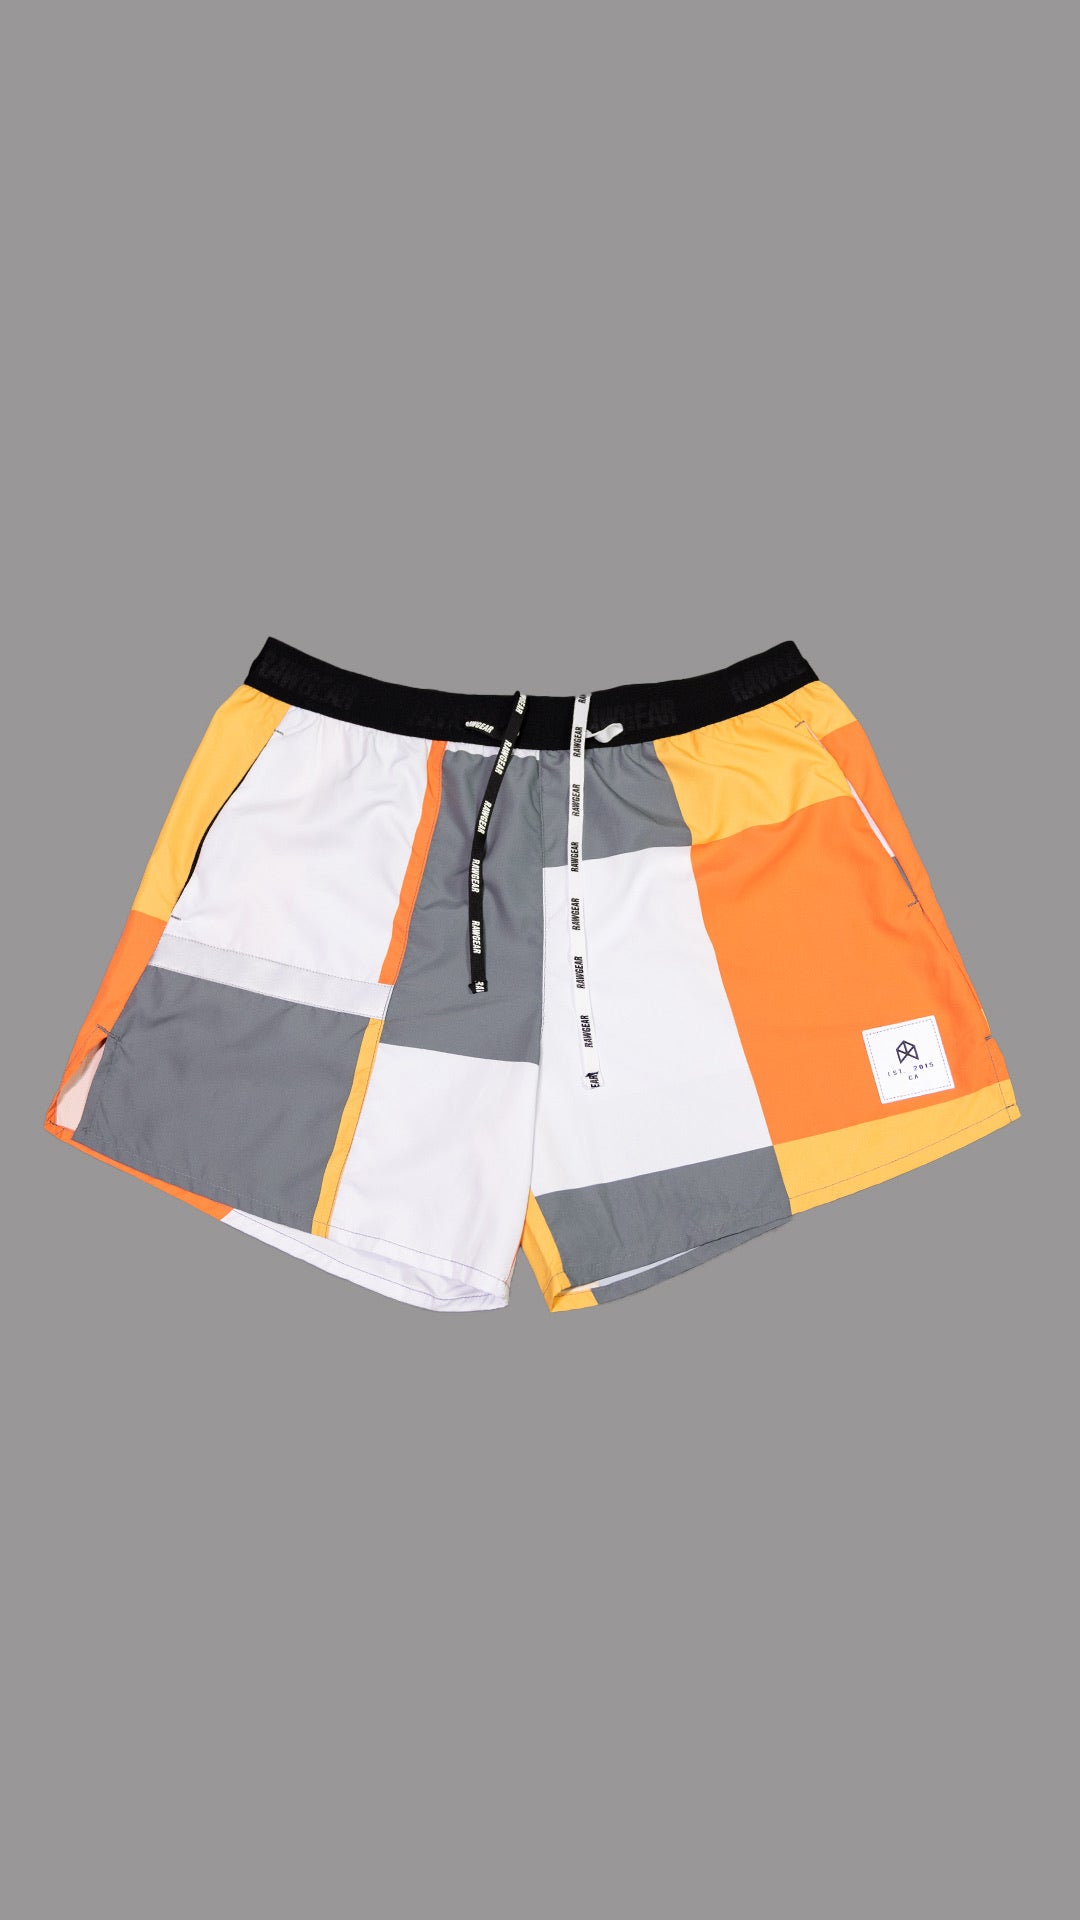 Dynamic Shorts